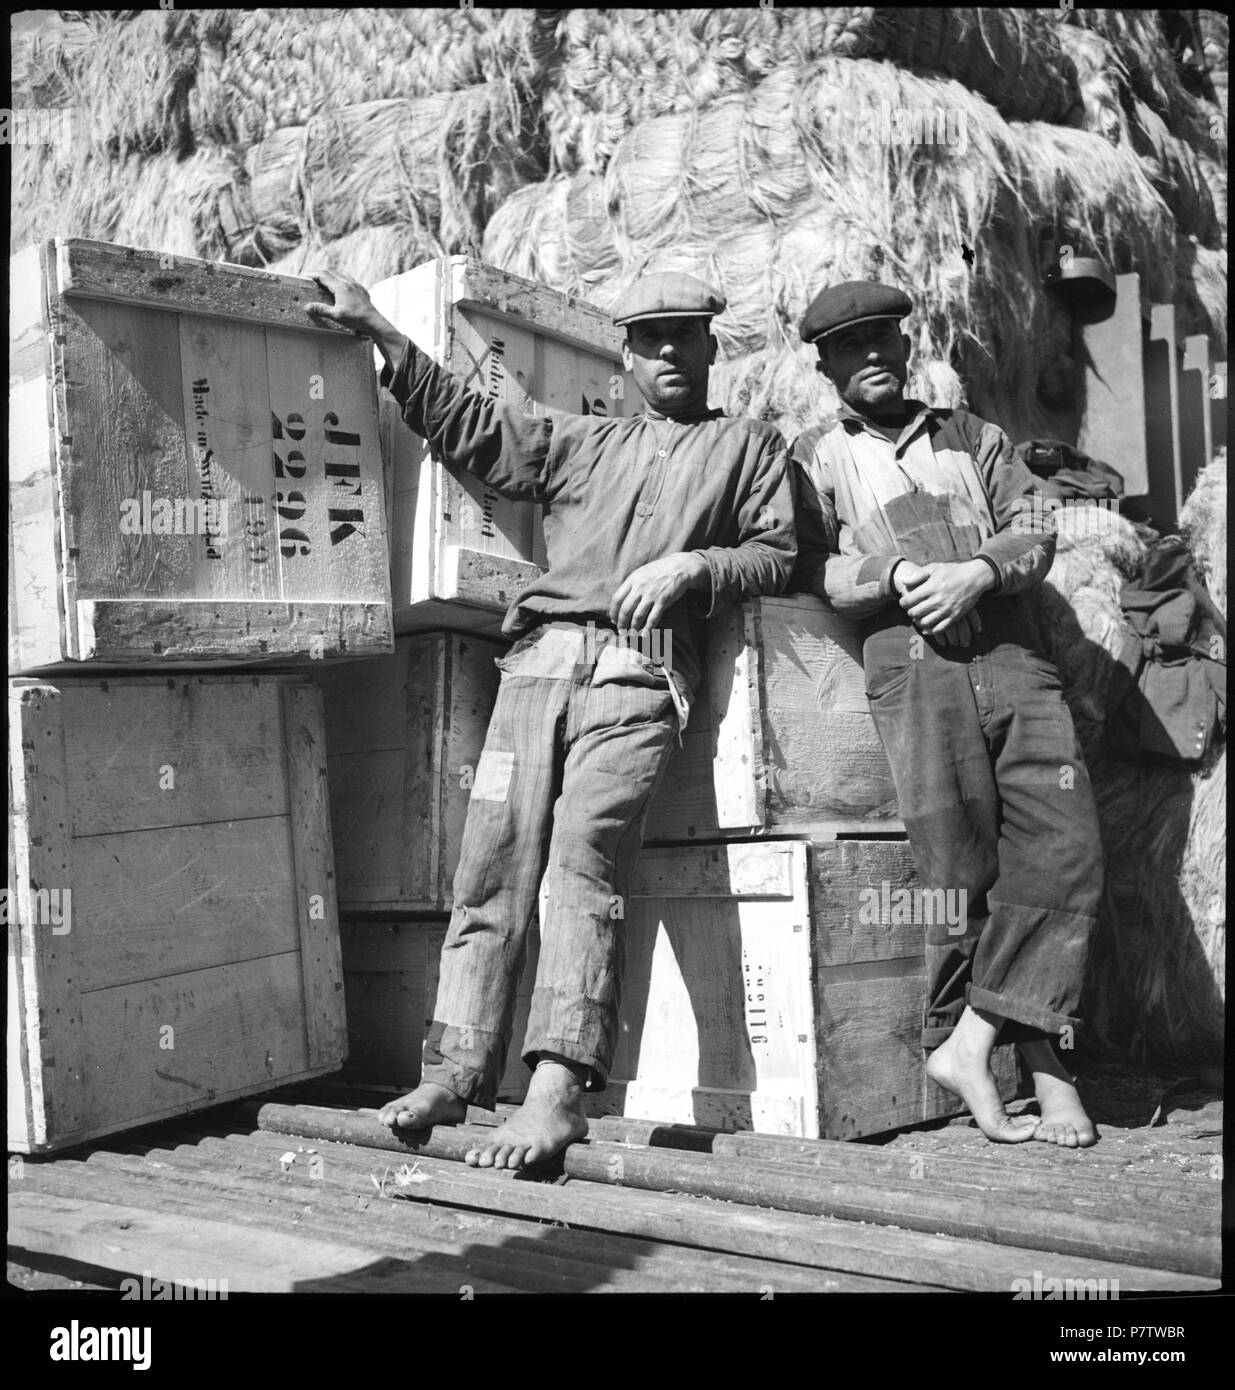 Il portogallo Lisbona (Lisboa): Hafen; Zwei Männer vor Kisten mit der Aufschrift JFK, dahinter ein Berg Baumwolle. Maggio 1941 78 CH-NB - portogallo Lisbona (Lisboa)- Hafen - Annemarie Schwarzenbach - SLA-Schwarzenbach-UN-5-24-092 Foto Stock